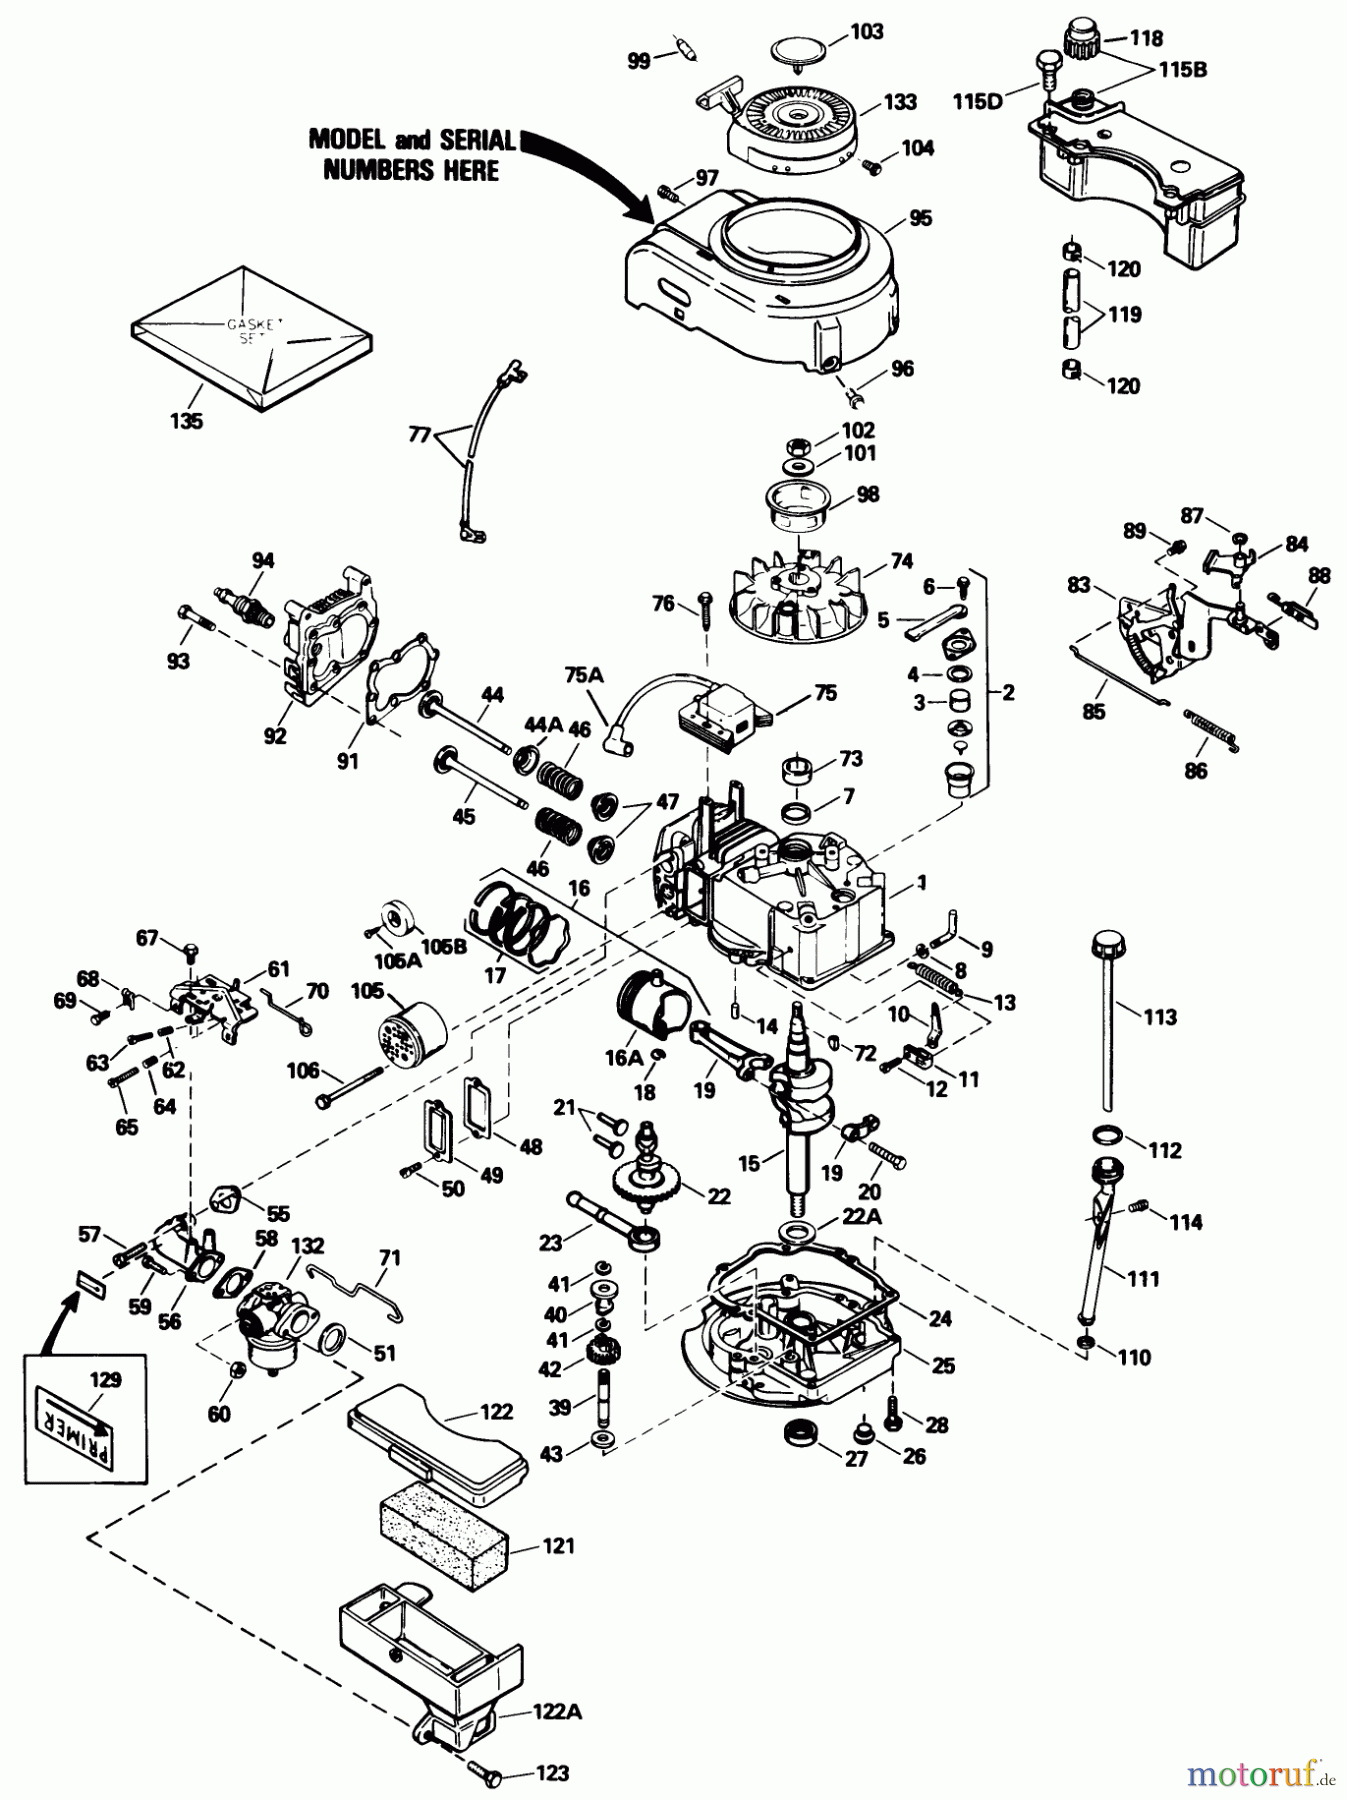  Toro Neu Mowers, Walk-Behind Seite 1 16776 - Toro Lawnmower, 1990 (0000001-0999999) ENGINE TECUMSEH MODEL NO. TVS100-44021B